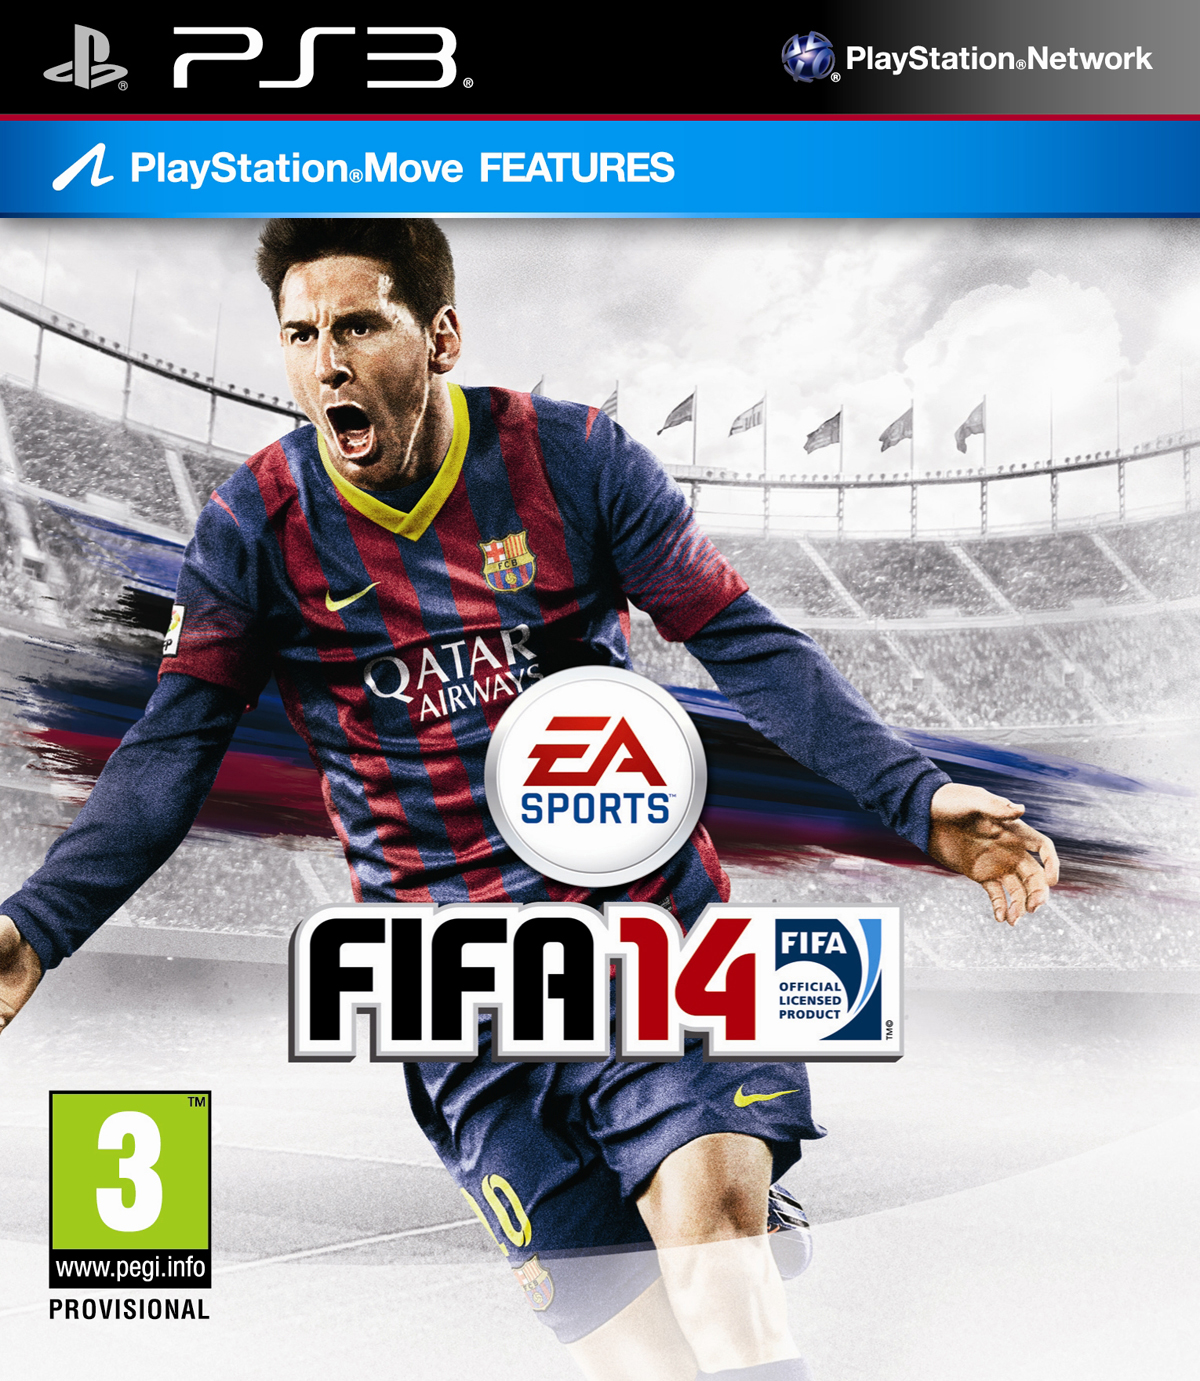 Na krabičce FIFA 14 bude hvězda Messi 84131